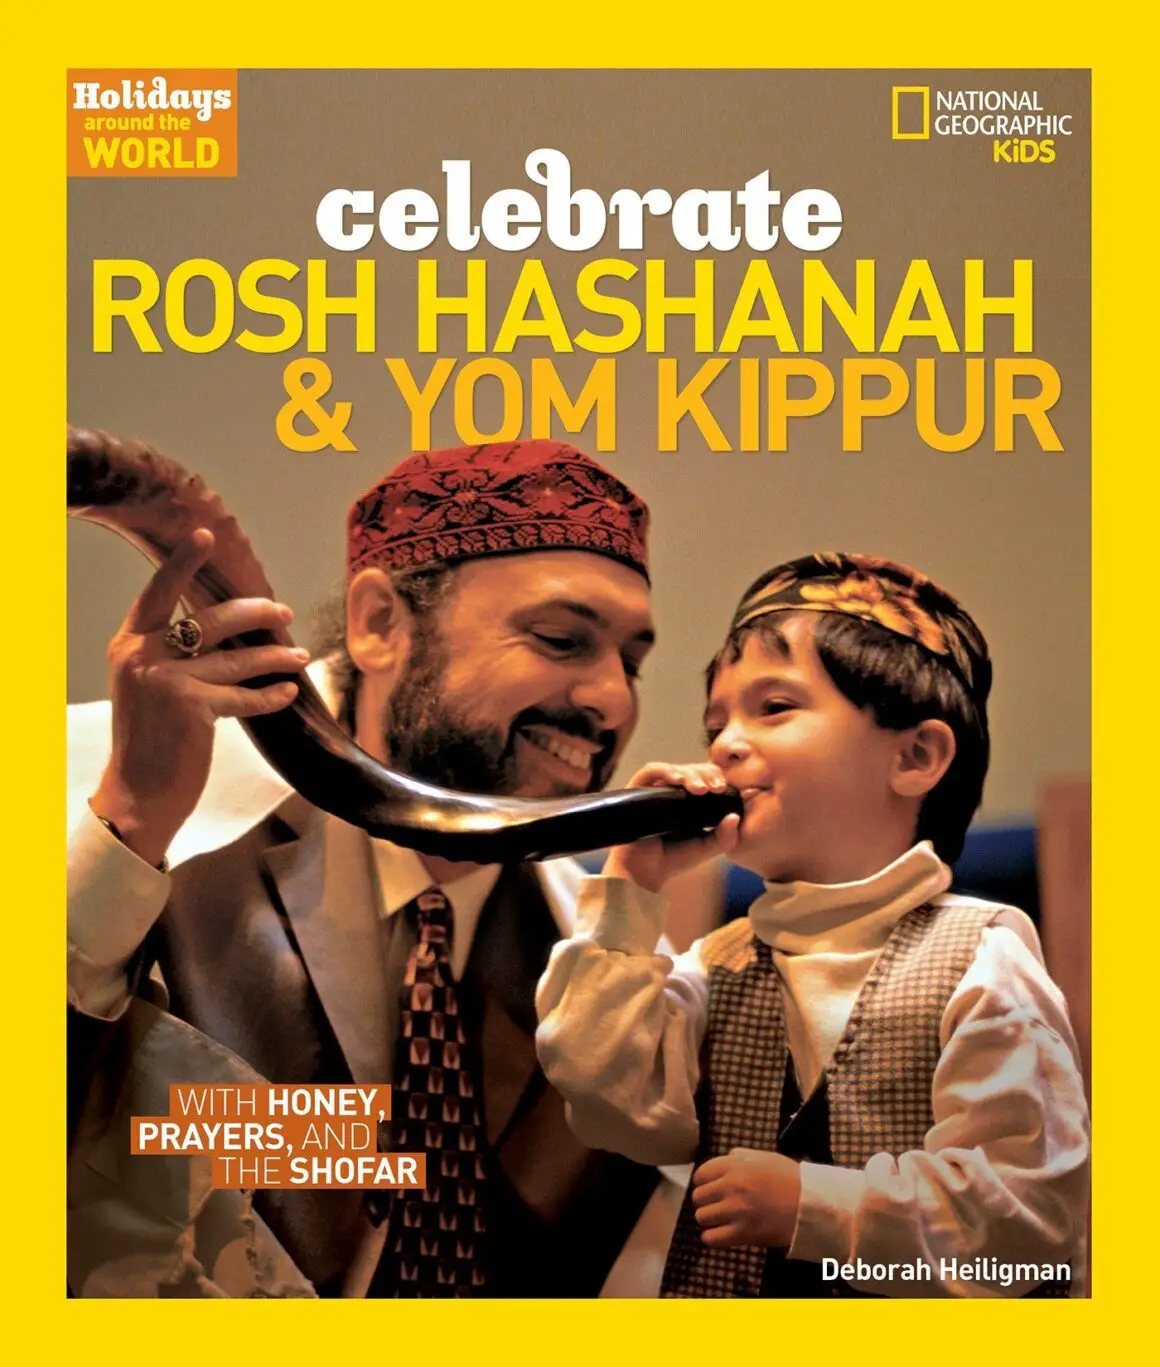 Rosh Hoshannah and Yom Kippur